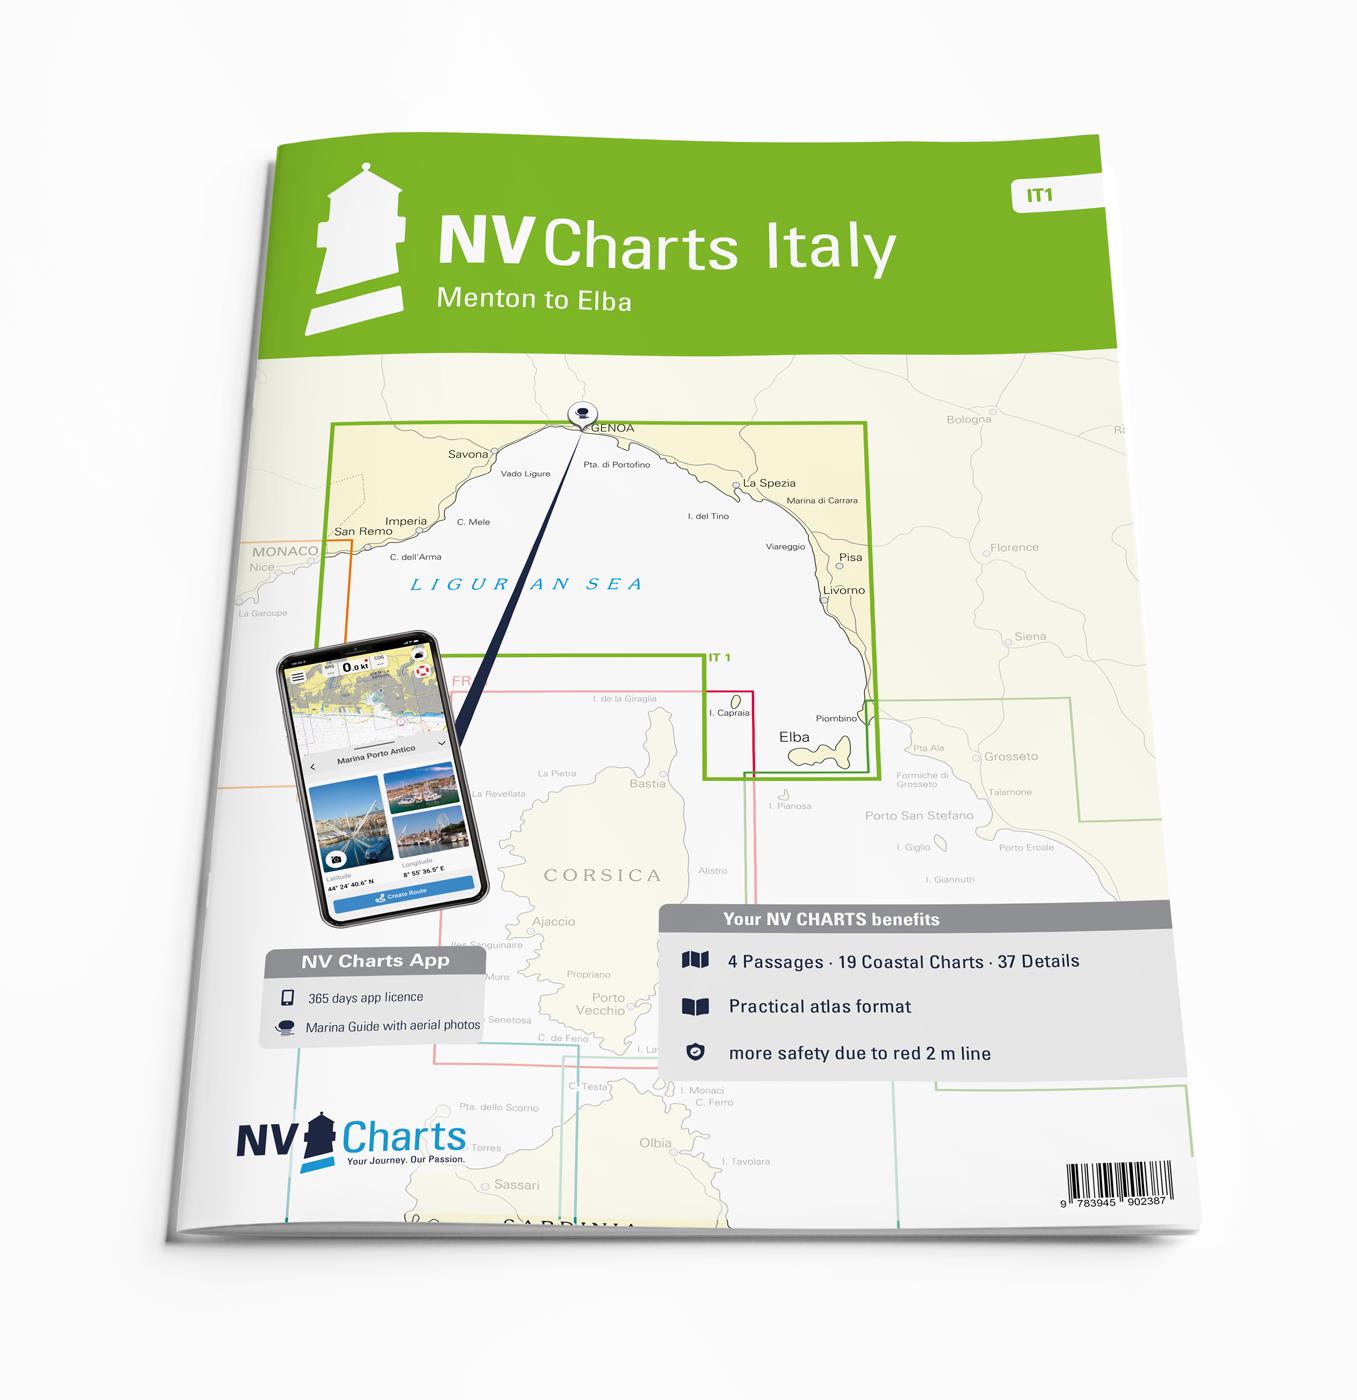 NV Seekarten Atlas Italien